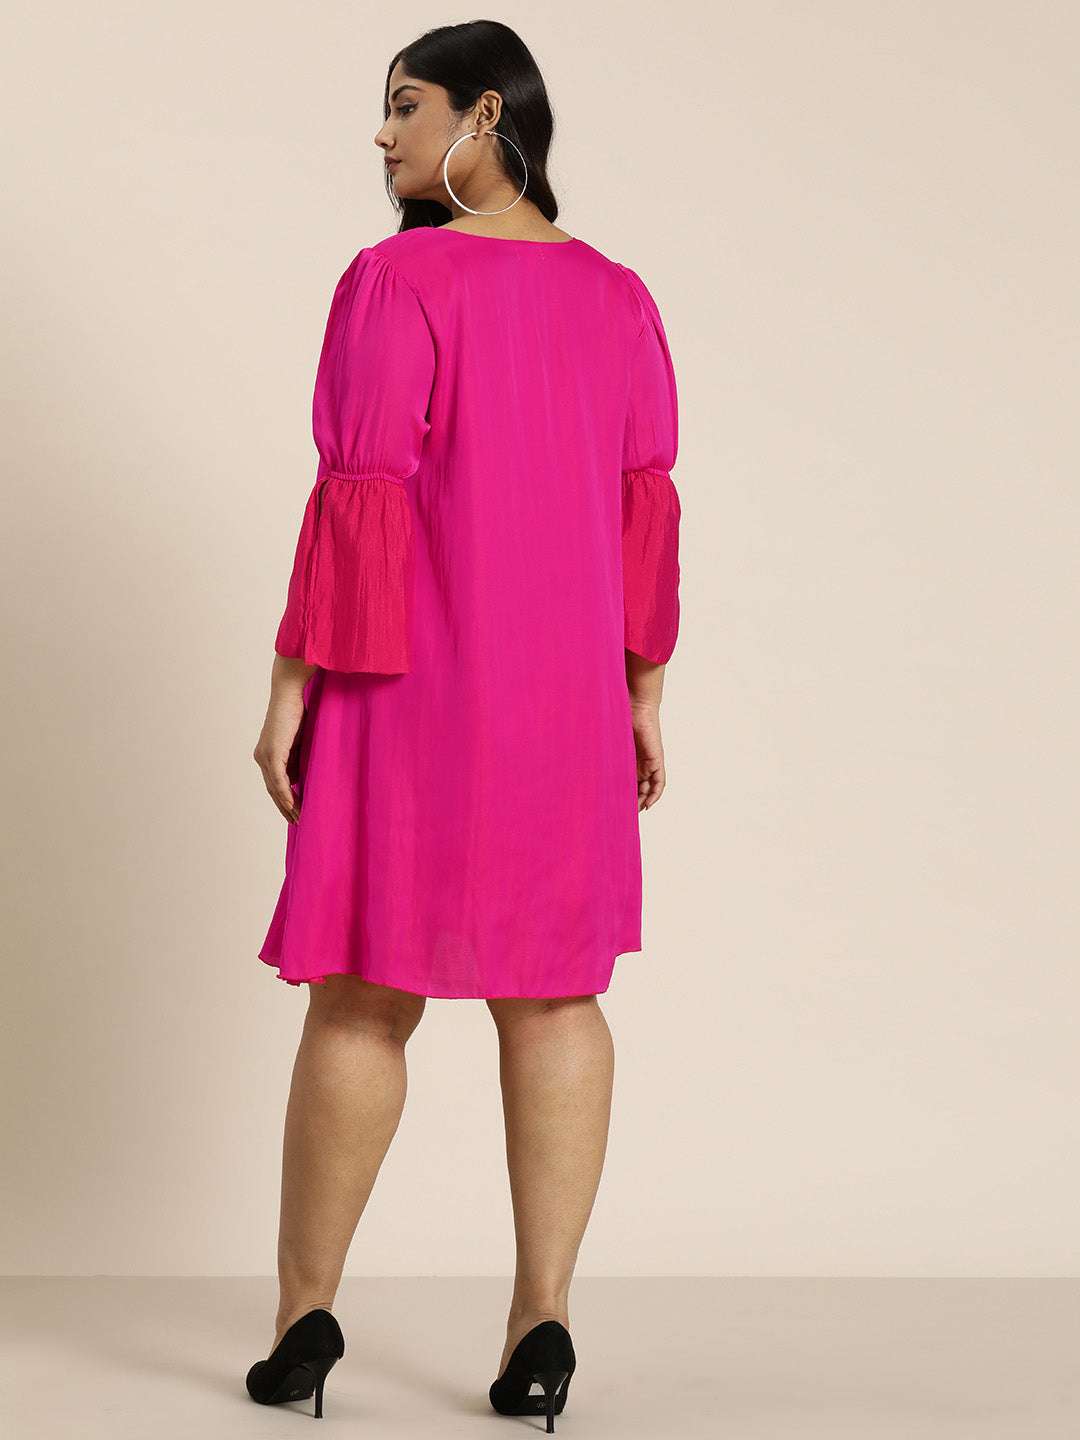 Hot Pink A Line Silk Dress